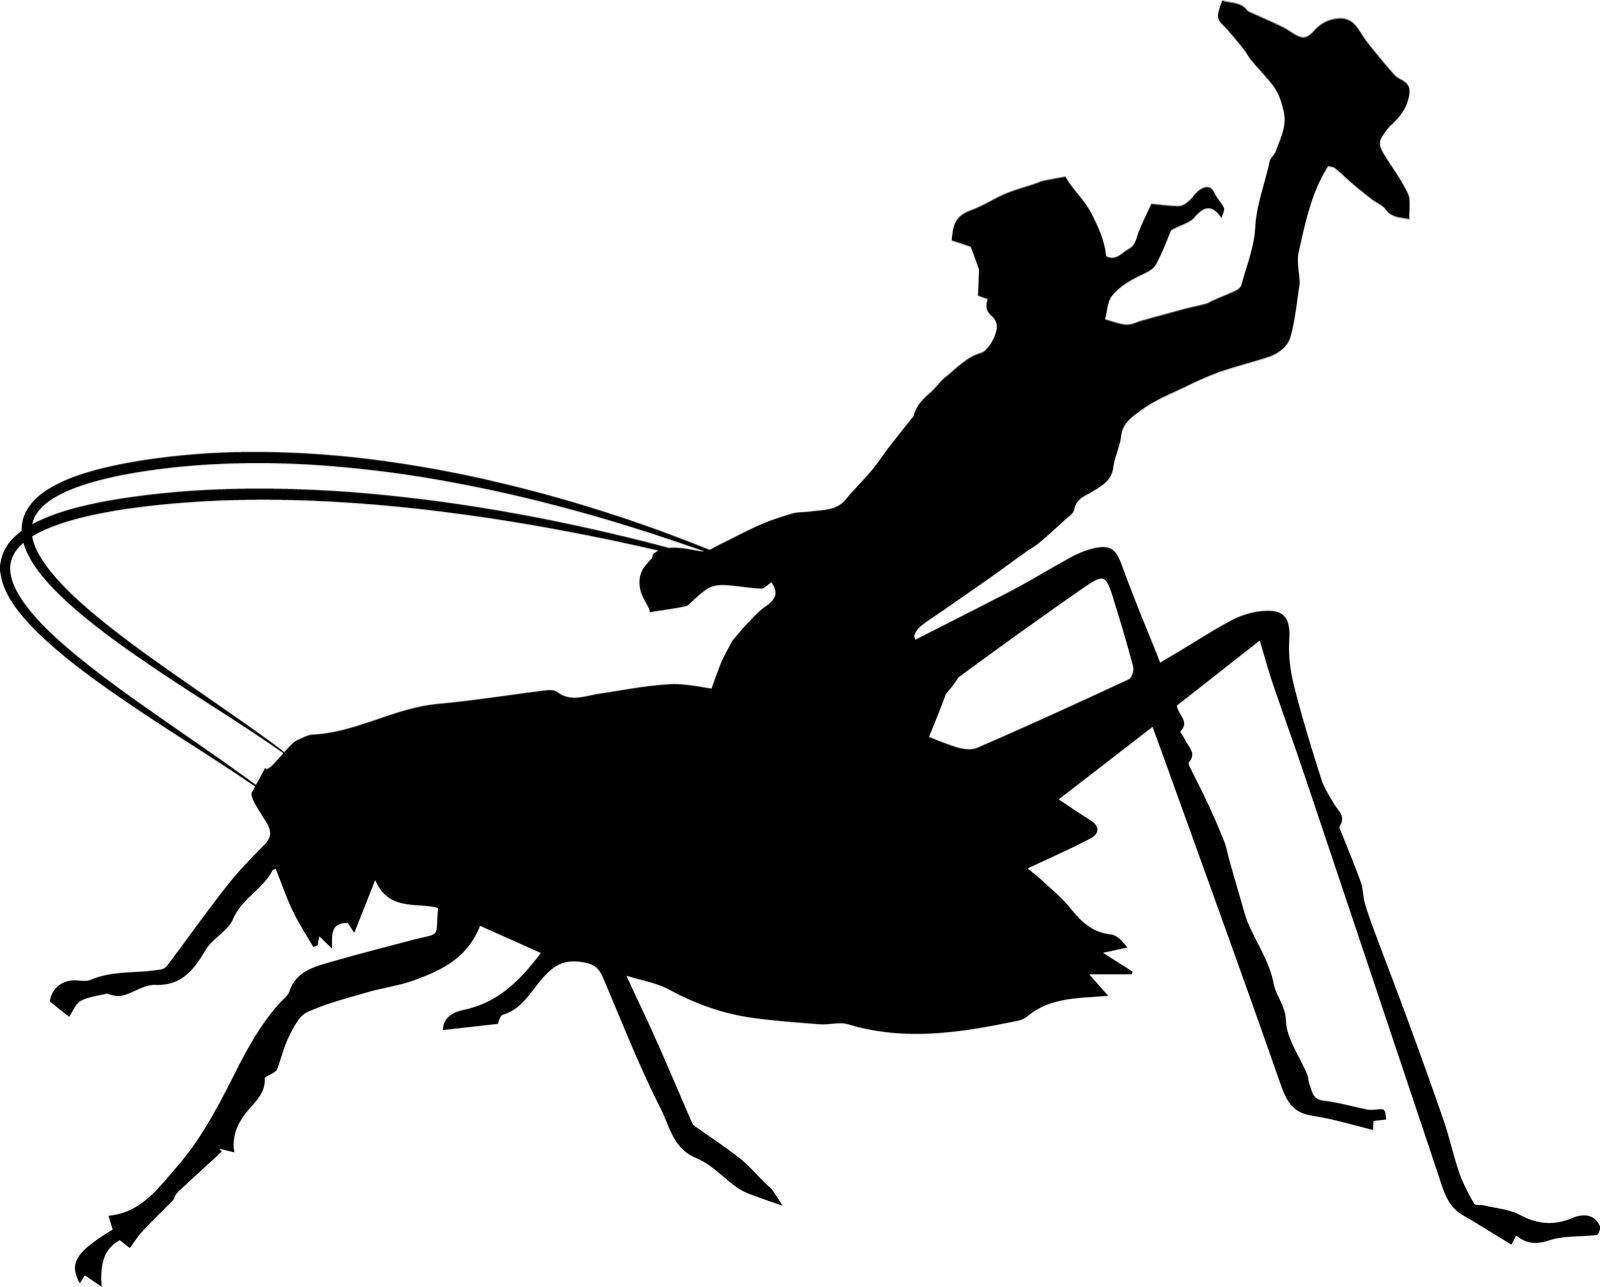 Cowboy Crickets